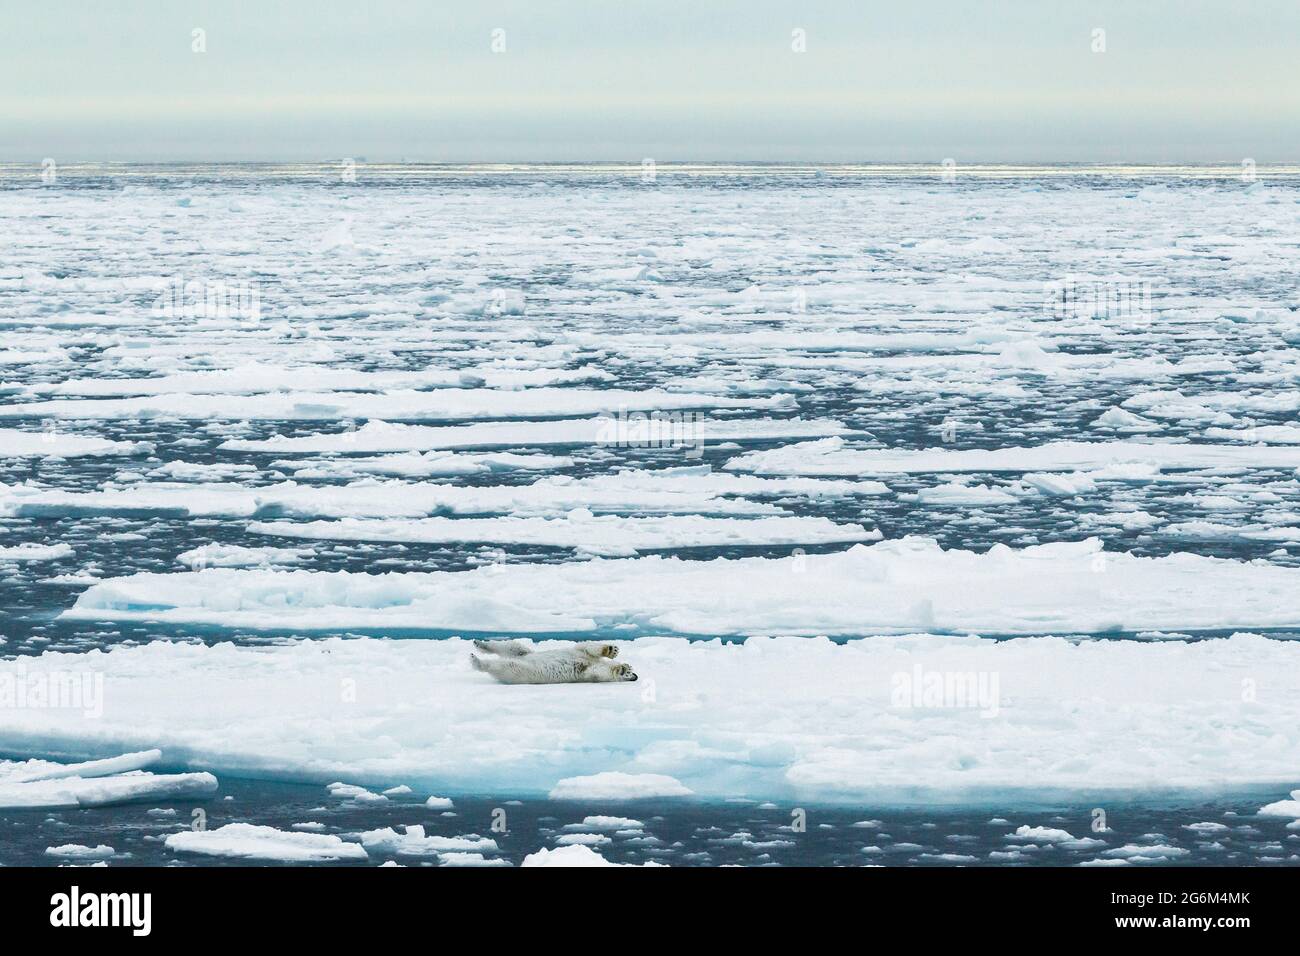 Orso polare (Ursus maritimus) sull'iceberg. Svalbard, Spitzbergen, Norvegia, Artico Foto Stock